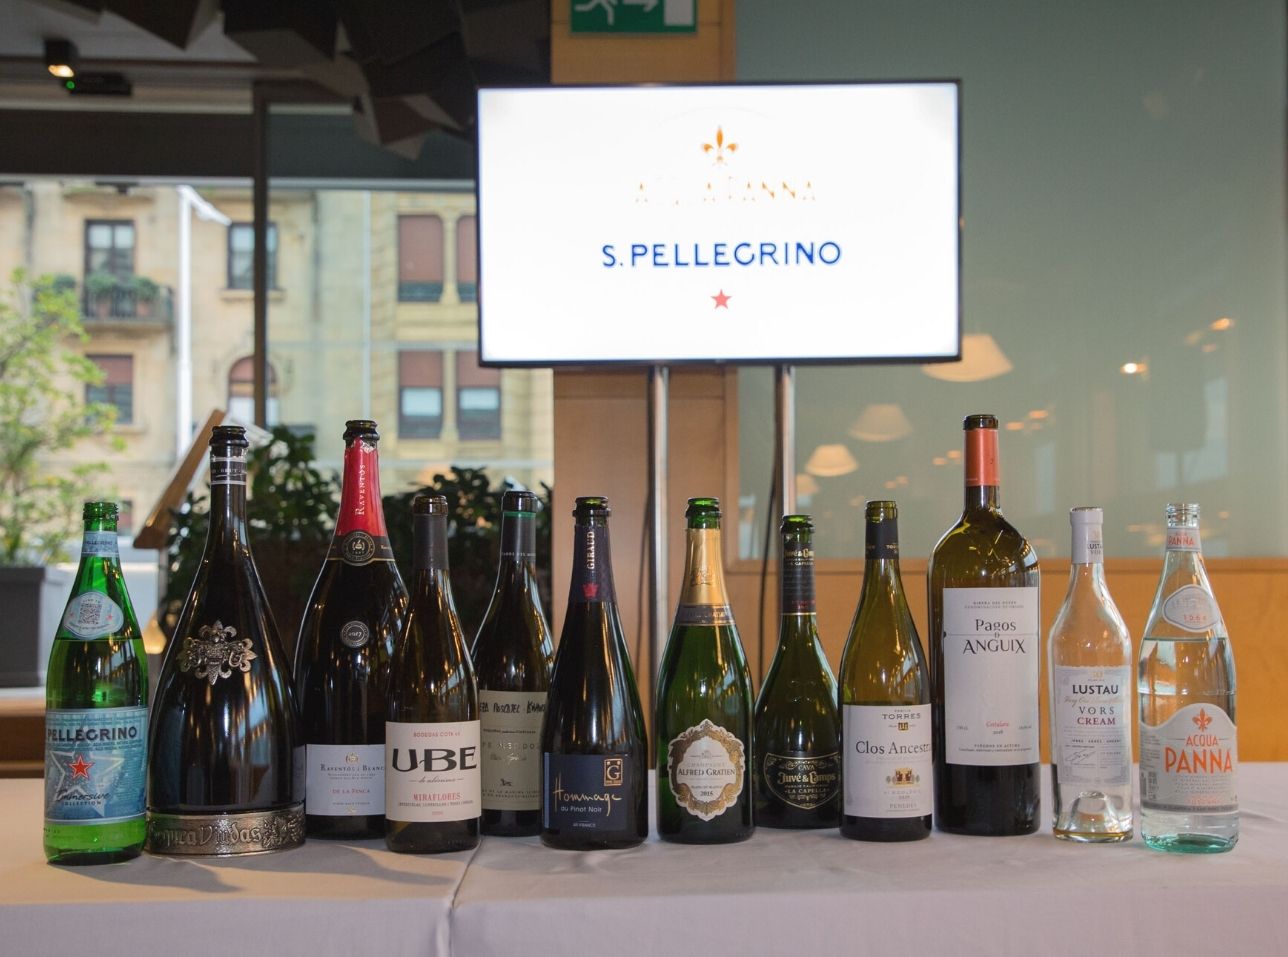 Las 10 propuestas vitivinícolas en armonía con S.Pellegrino y Acqua Panna